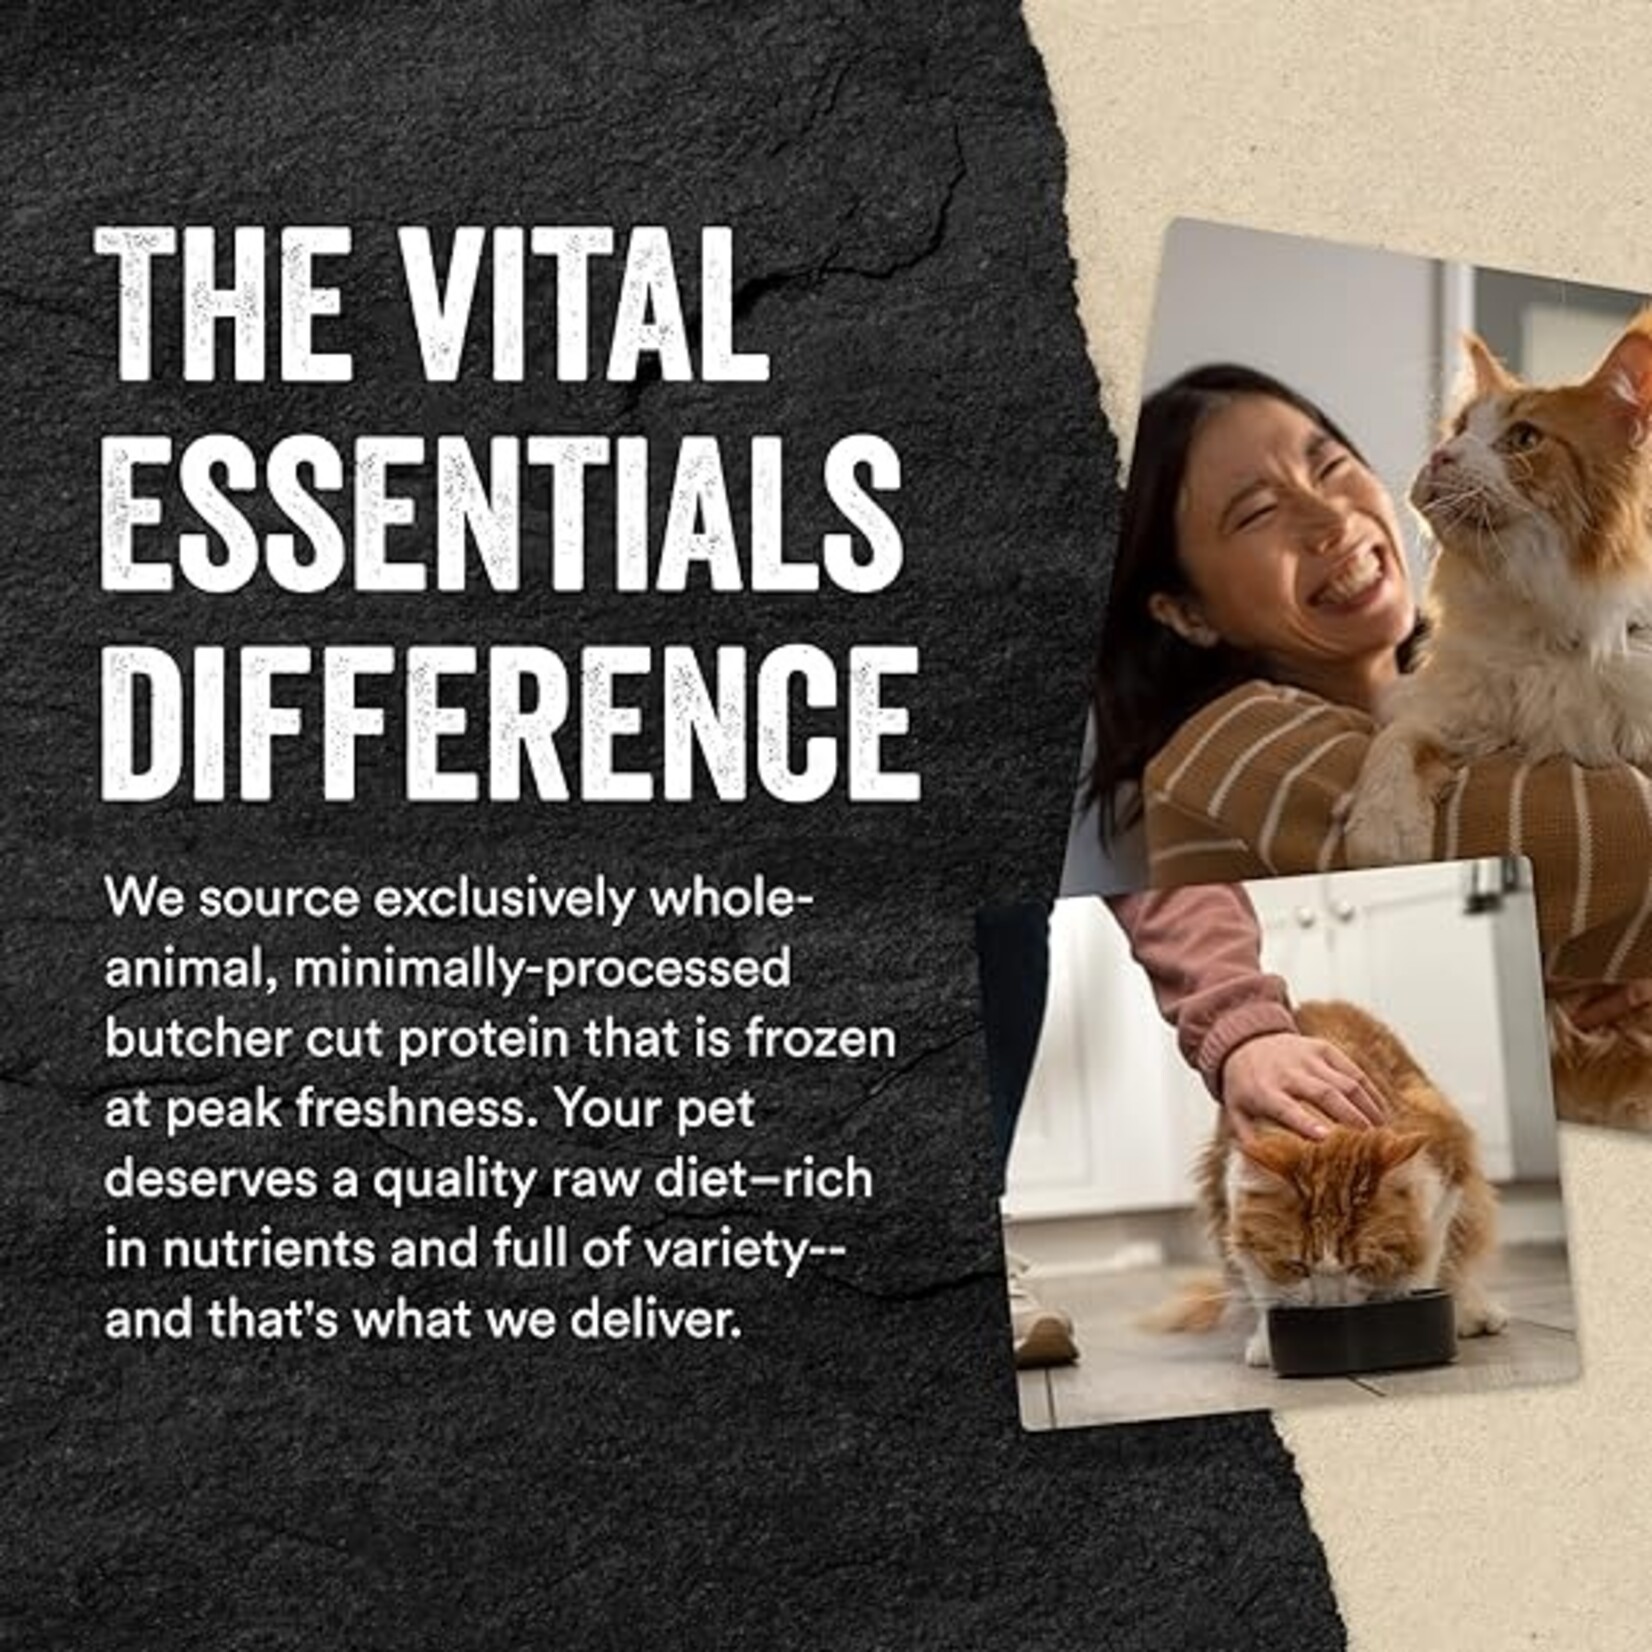 VITAL ESSENTIALS Vital Essentials Cat Freeze Dried Mini Nibs Duck 8oz